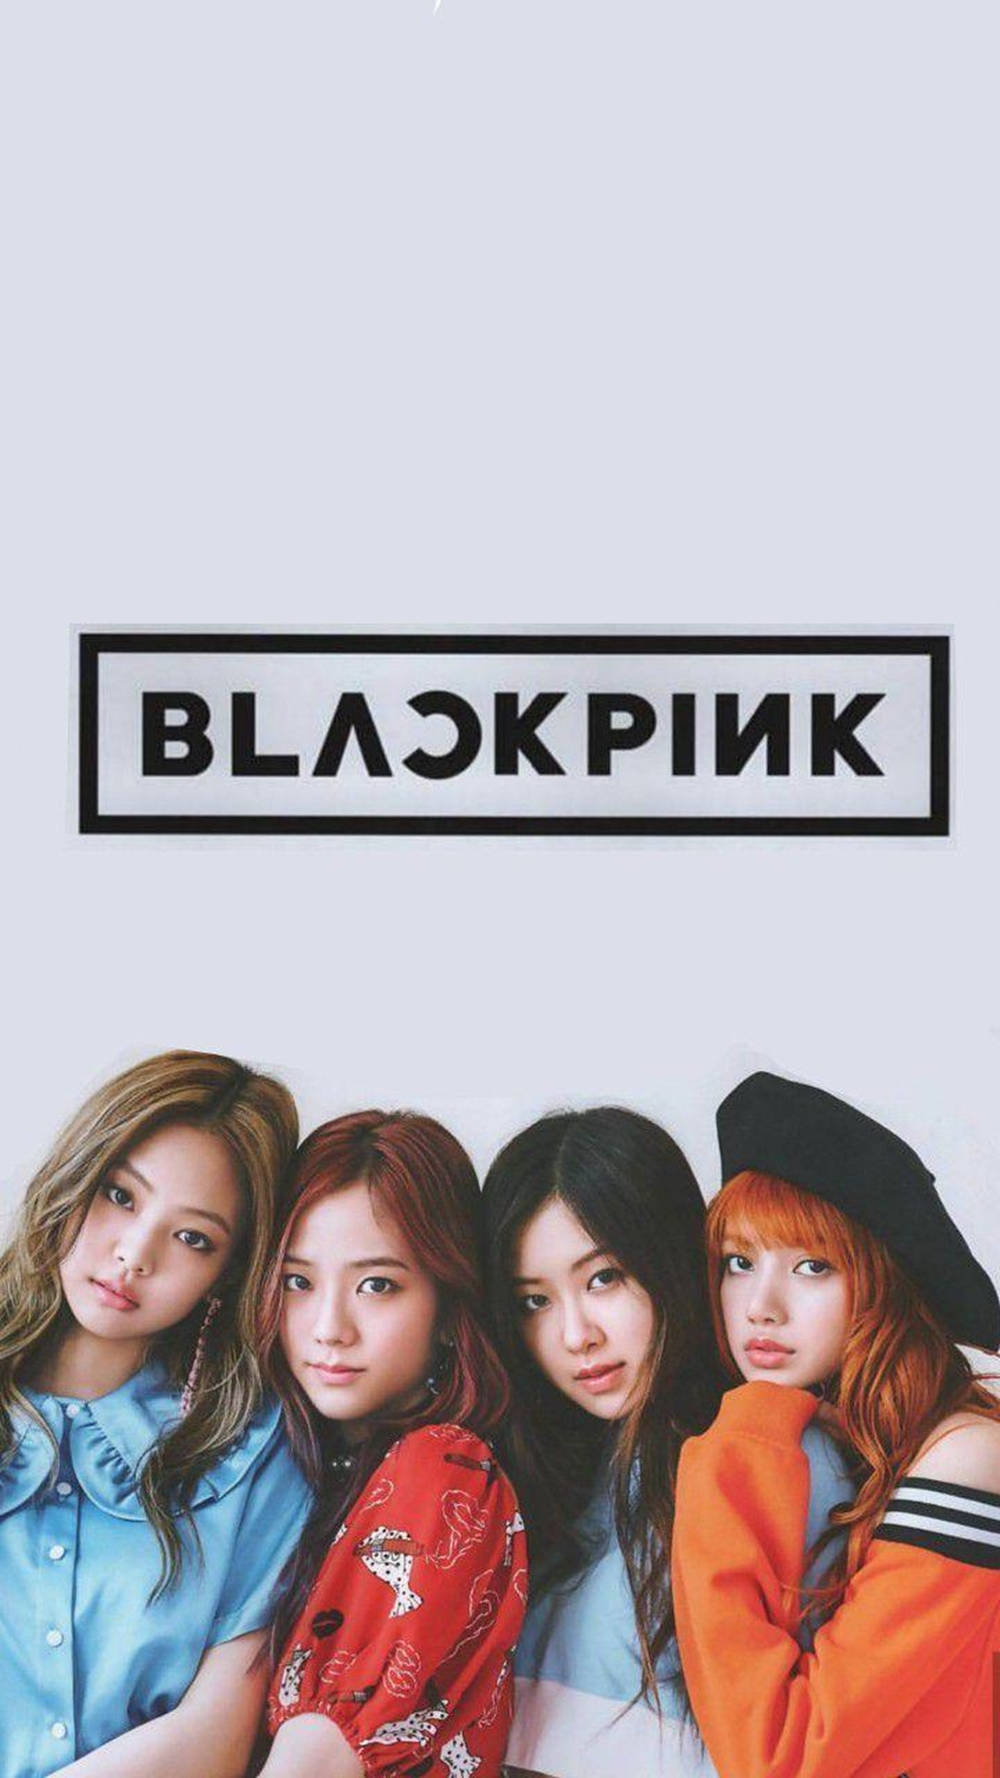 Membrosfofos Do Blackpink, Uma Sensação De K-pop. Papel de Parede